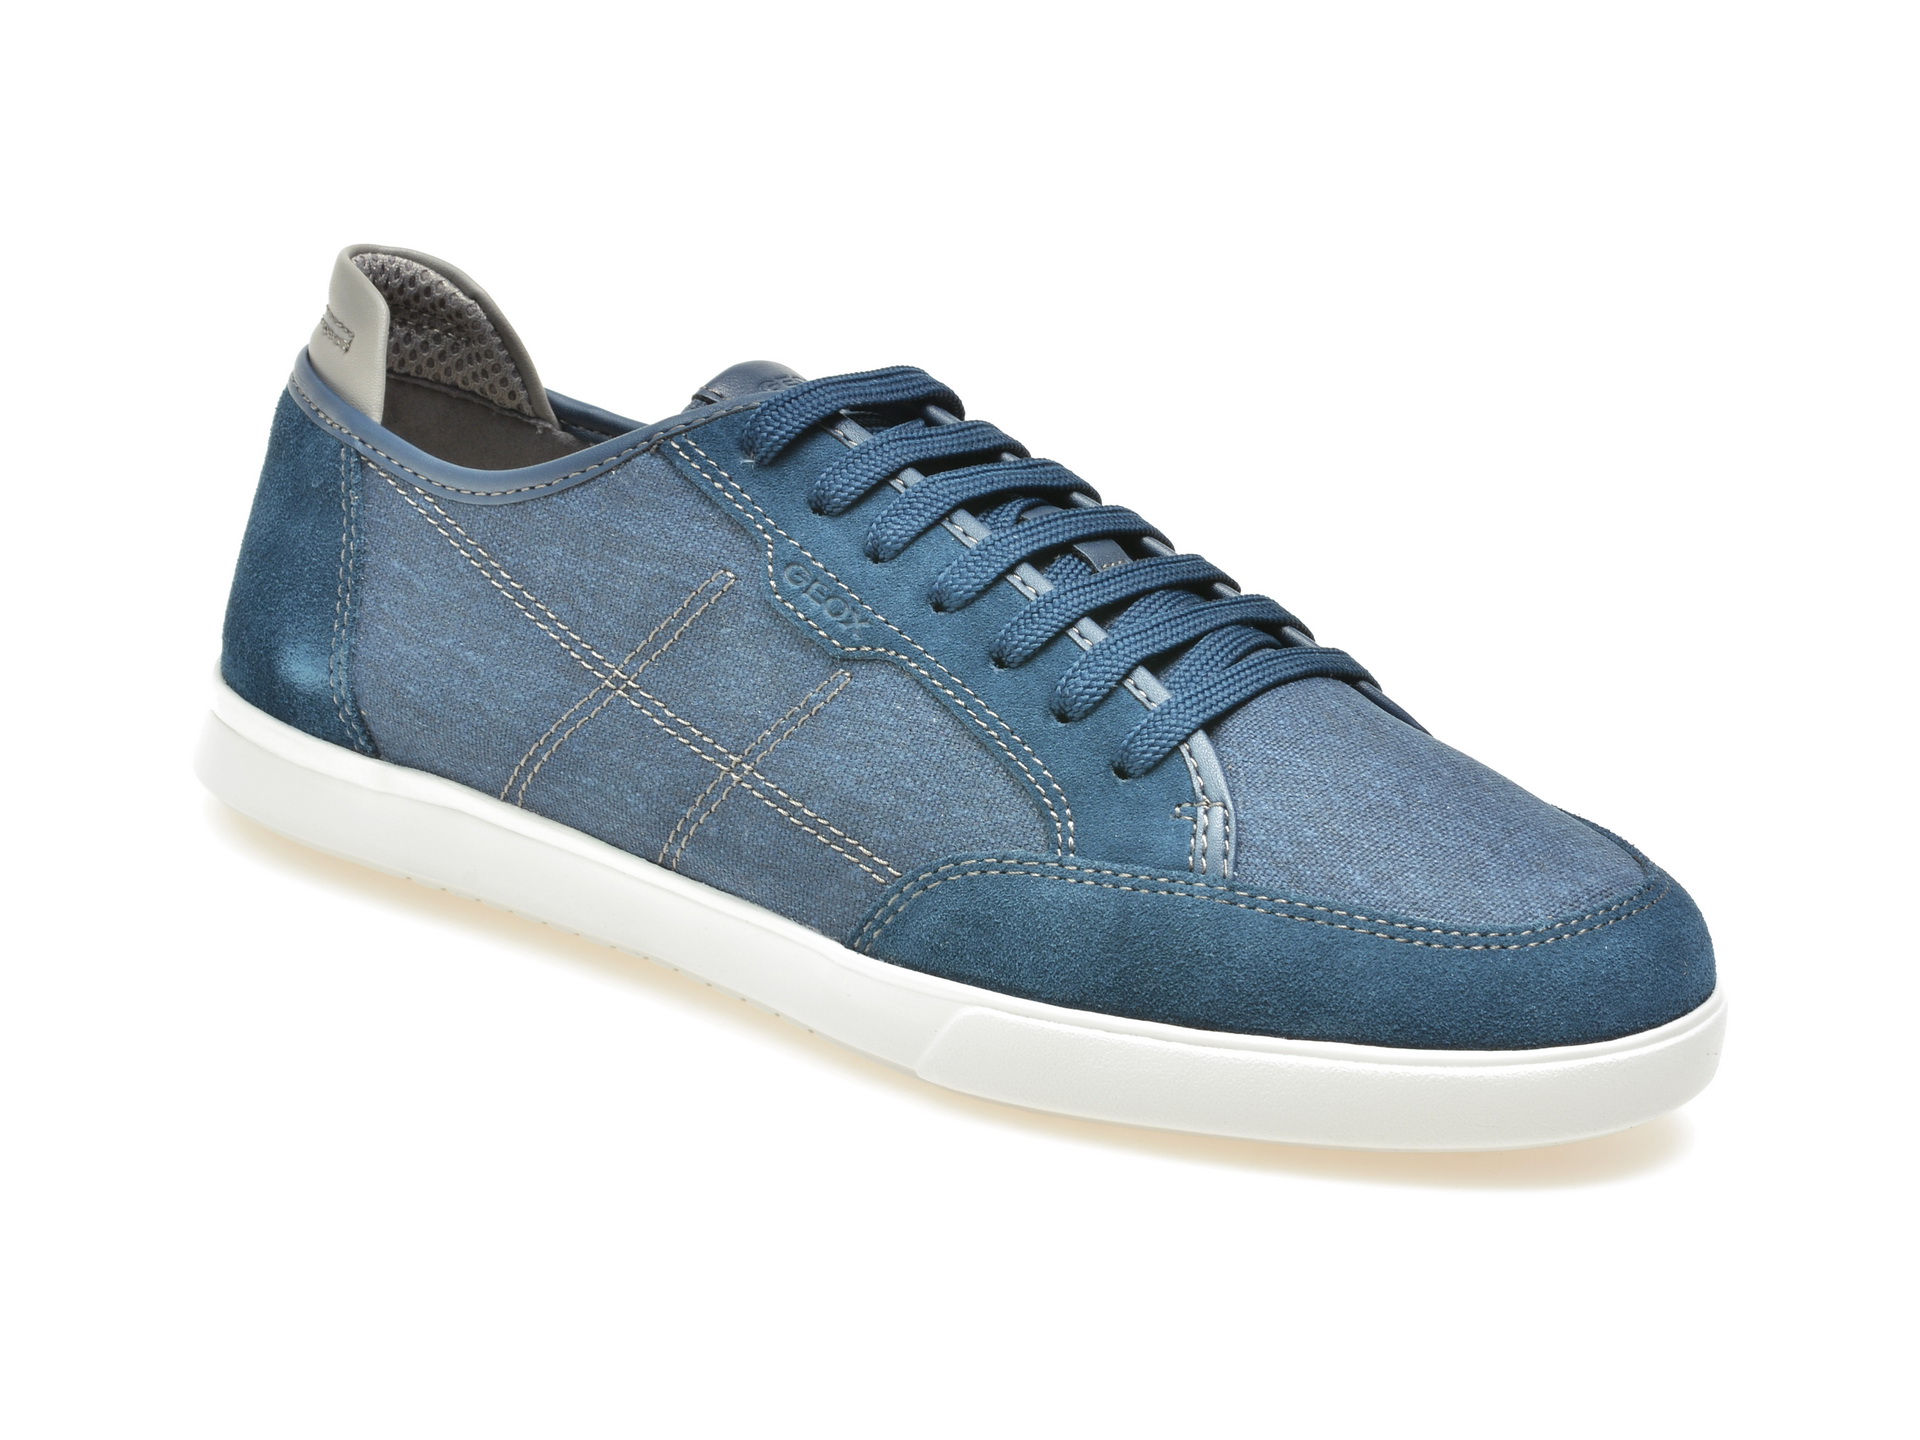 Pantofi GEOX albastri, U722Ca, din material textil